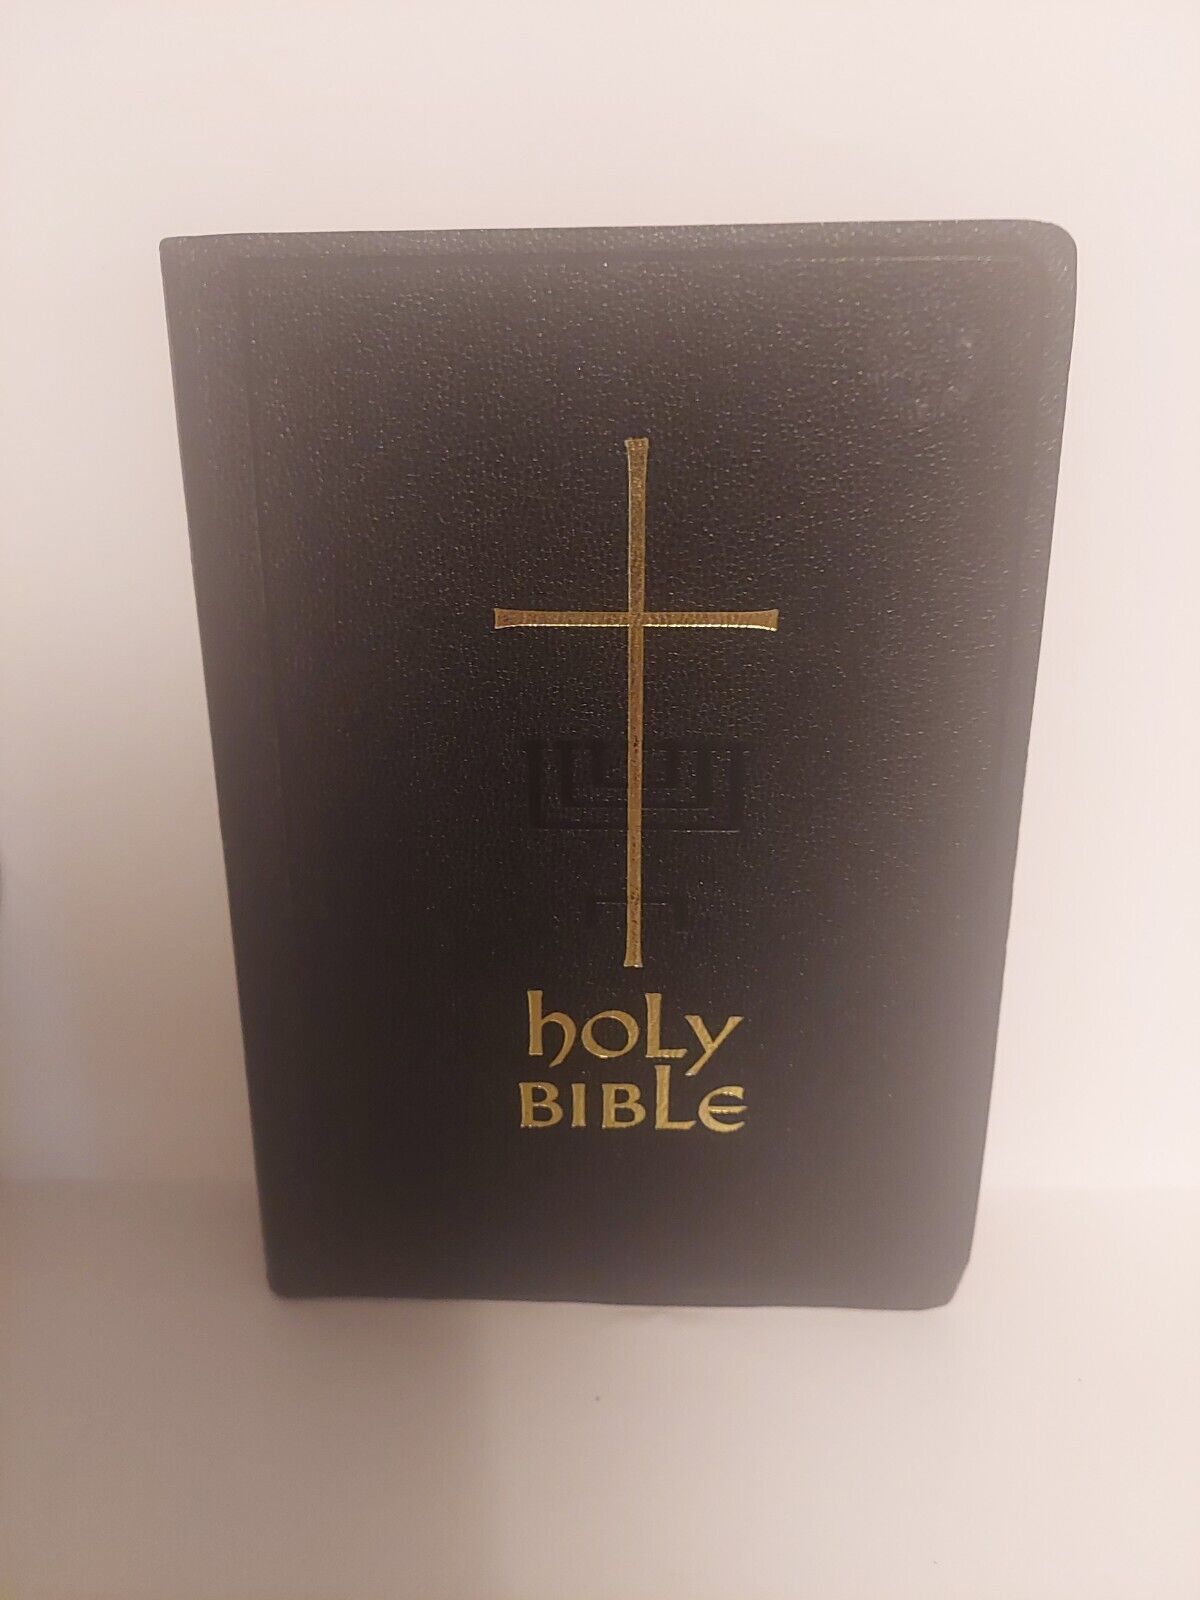 RARE VINTAGE CATHOLIC BIBLE VERY NICE